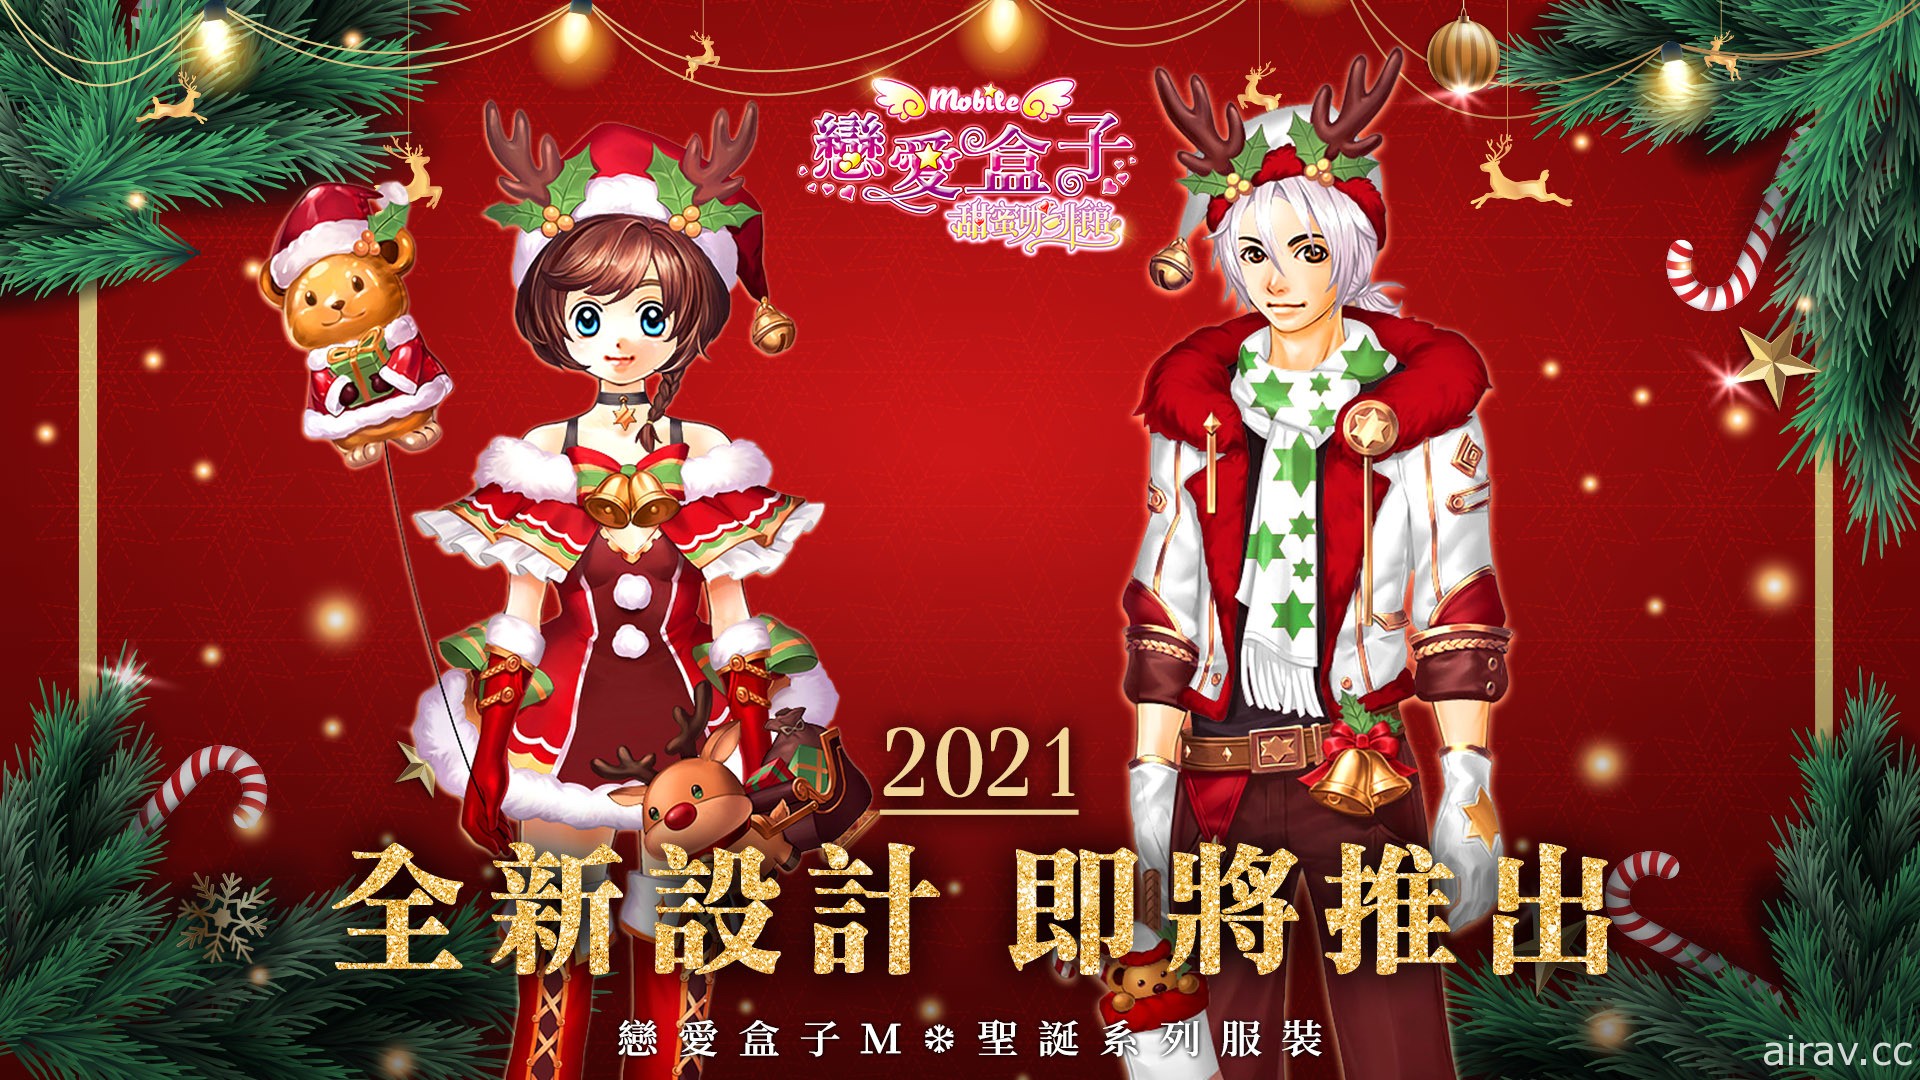 《恋爱盒子 M》举办一系列圣诞活动 圣诞系列服装登场